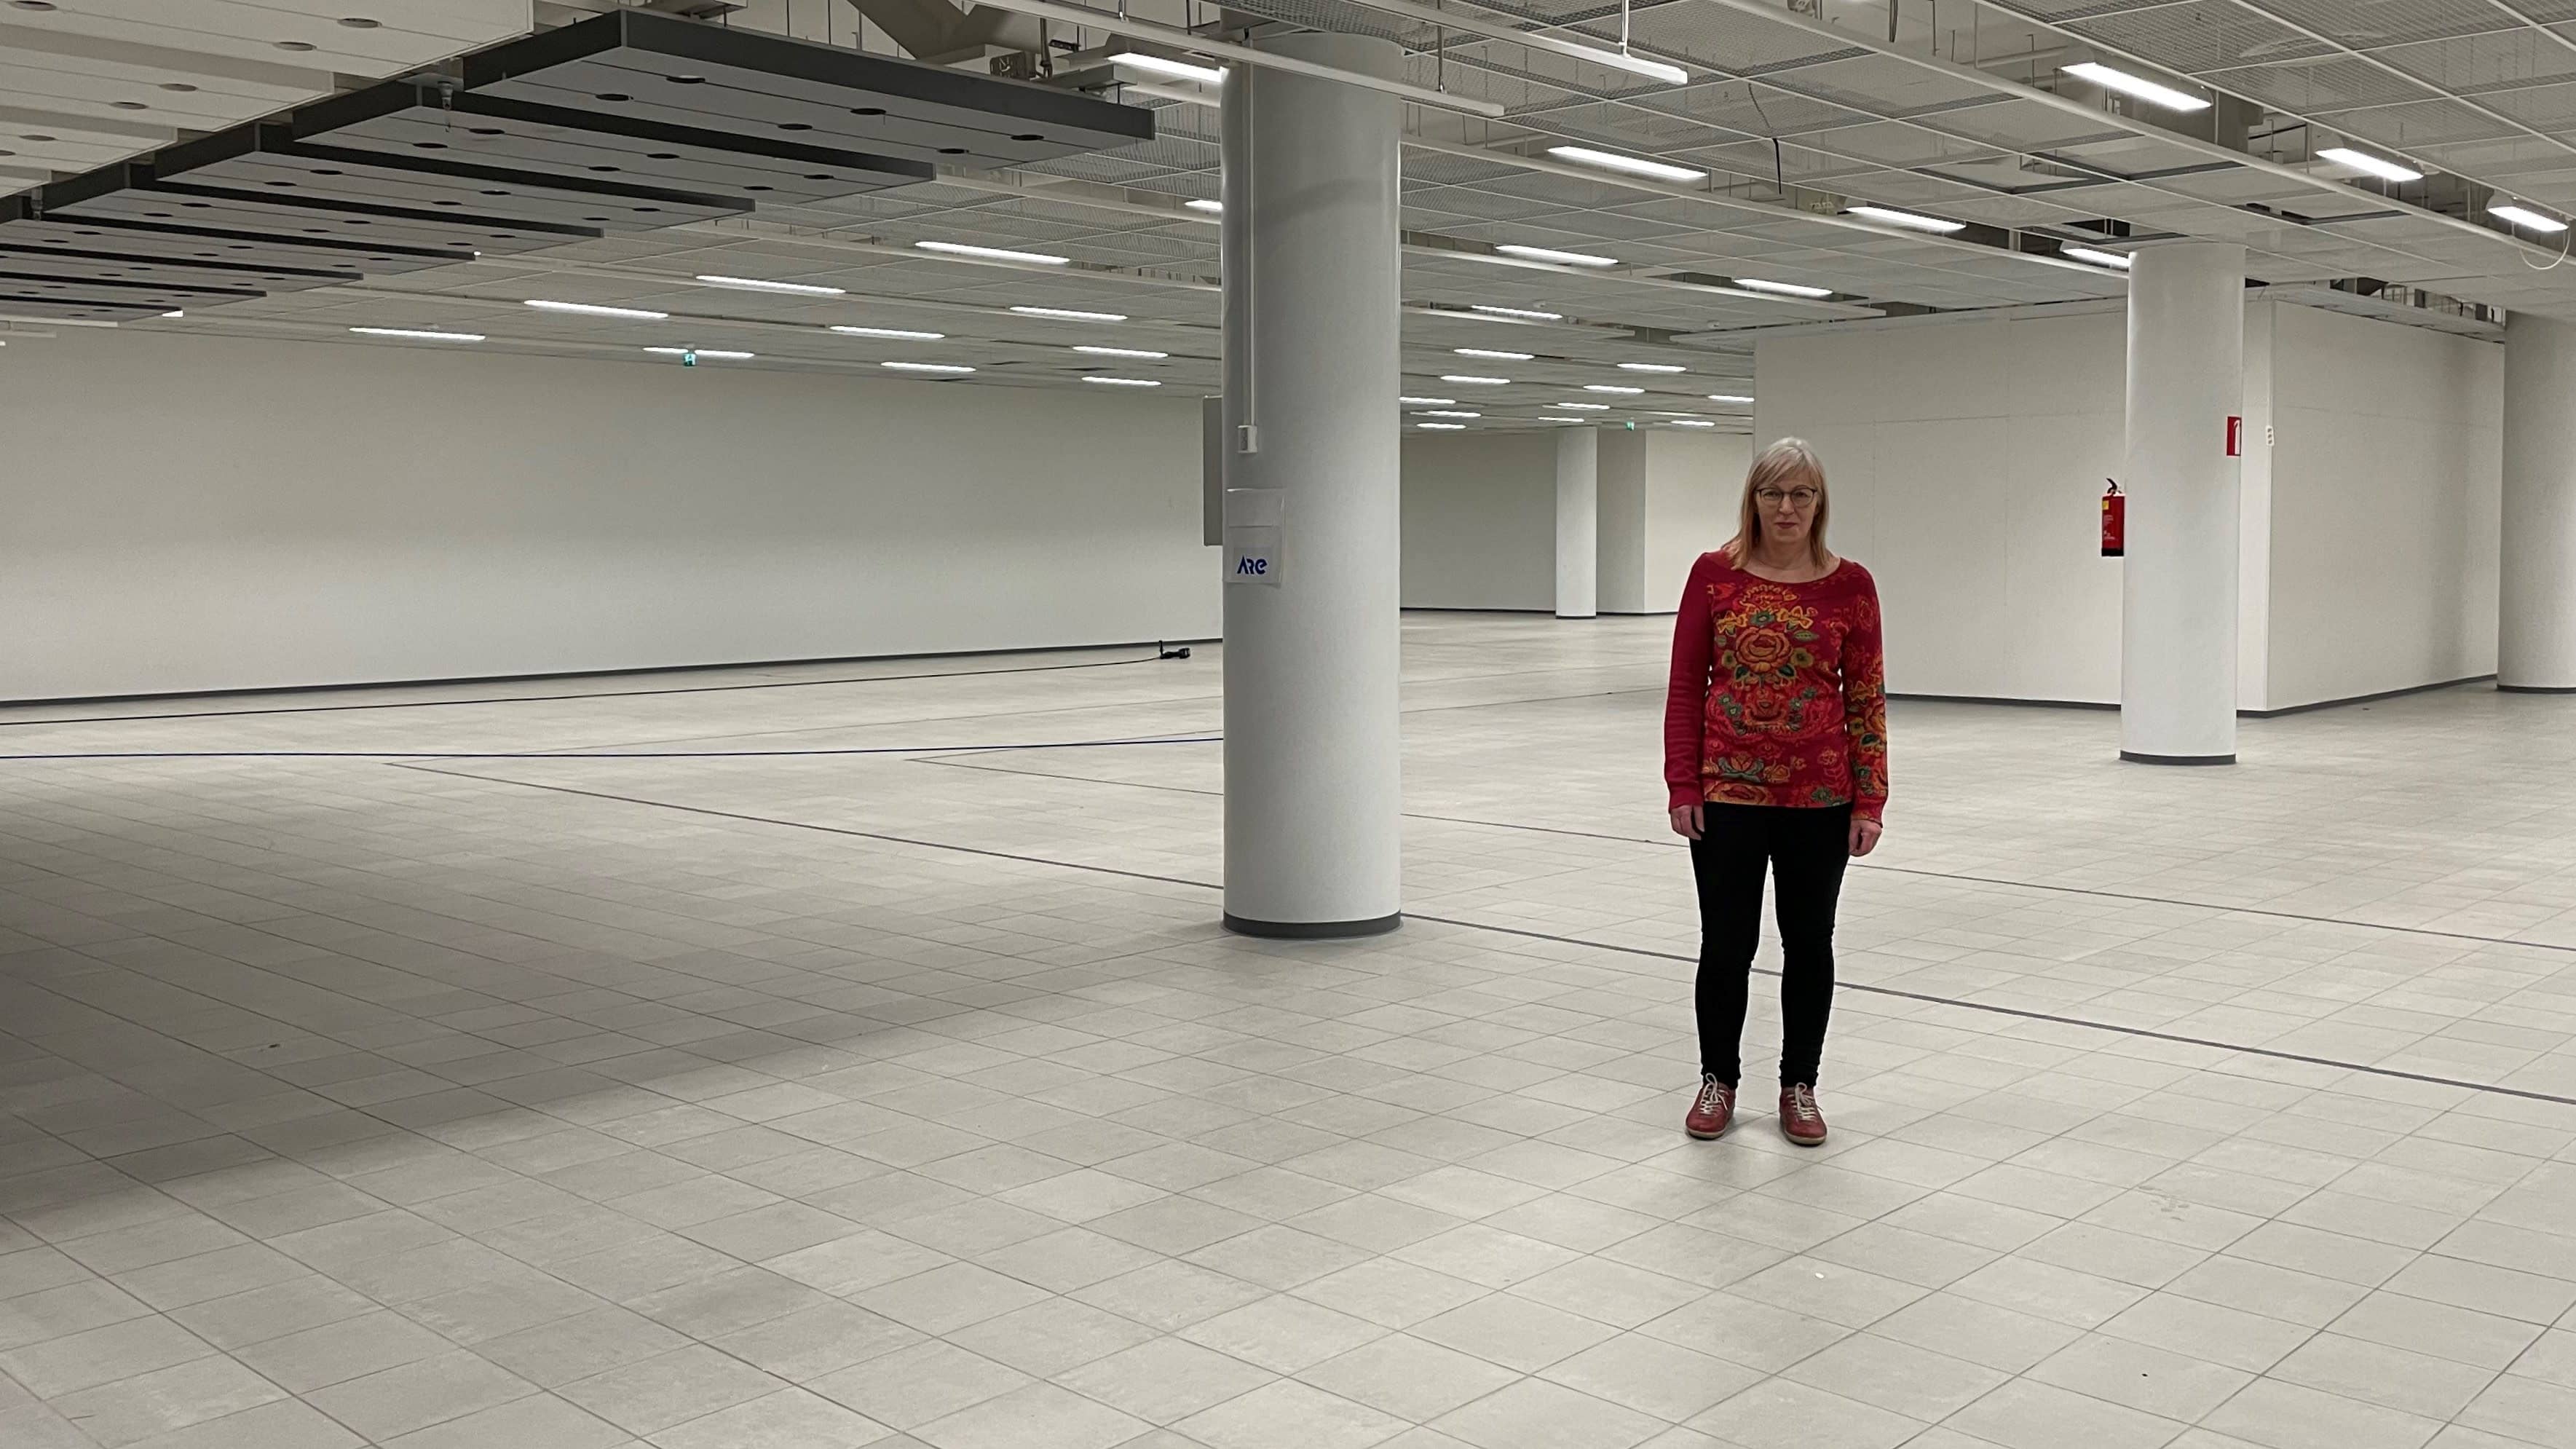 Lappeenrannan pääkirjaston väistötilat rakennetaan kauppakeskukseen – kirjastotoimenjohtaja Marja Huuhtanen kertoo tulevasta muutosta